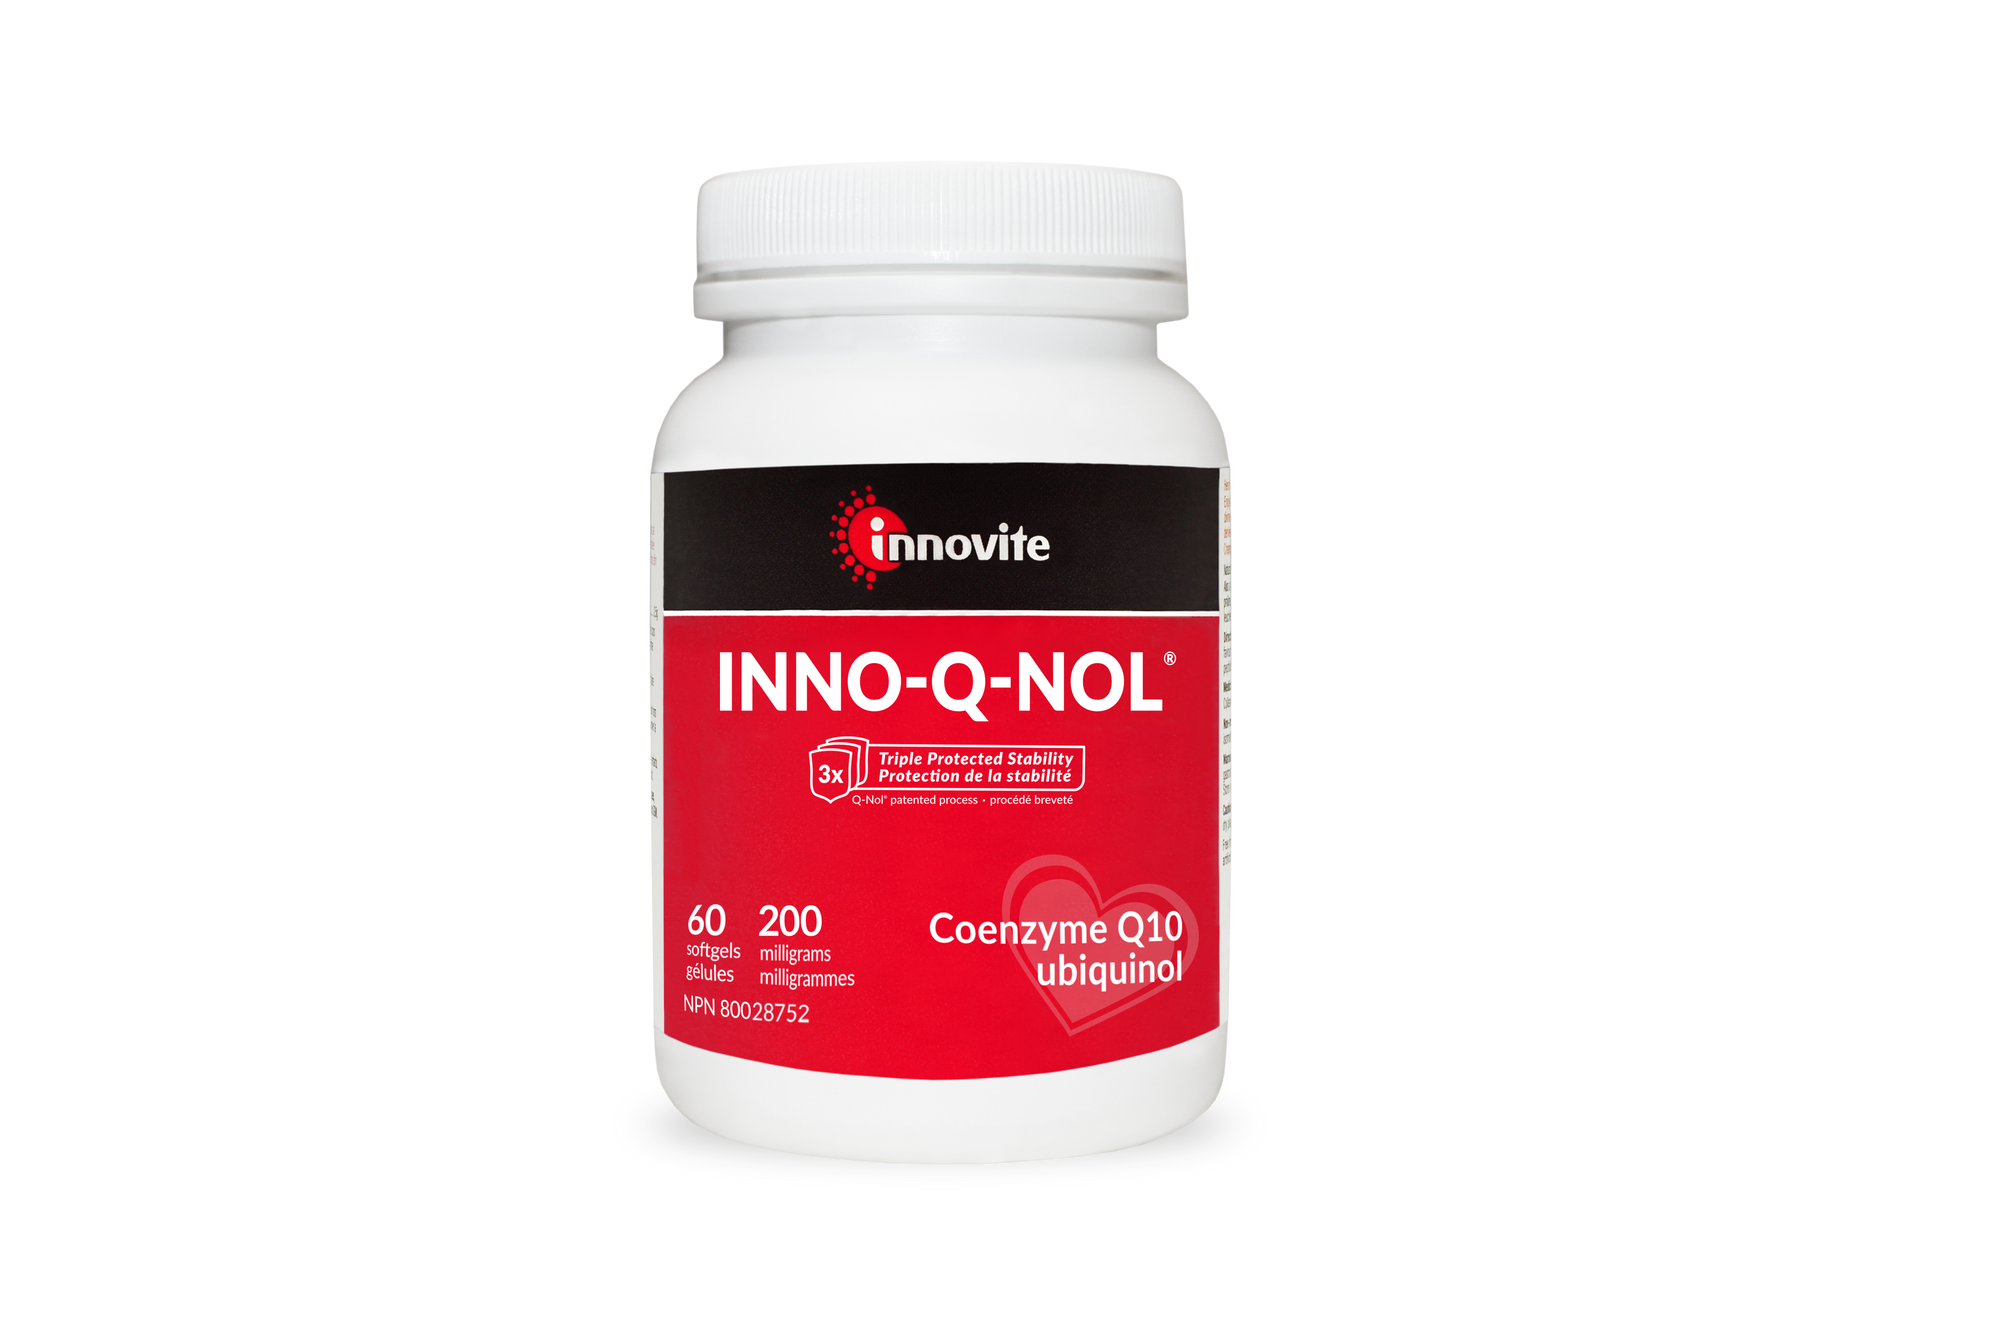 Innovite INNO-Q-NOL (CoQ10 Ubiquinol) 200mg 60s